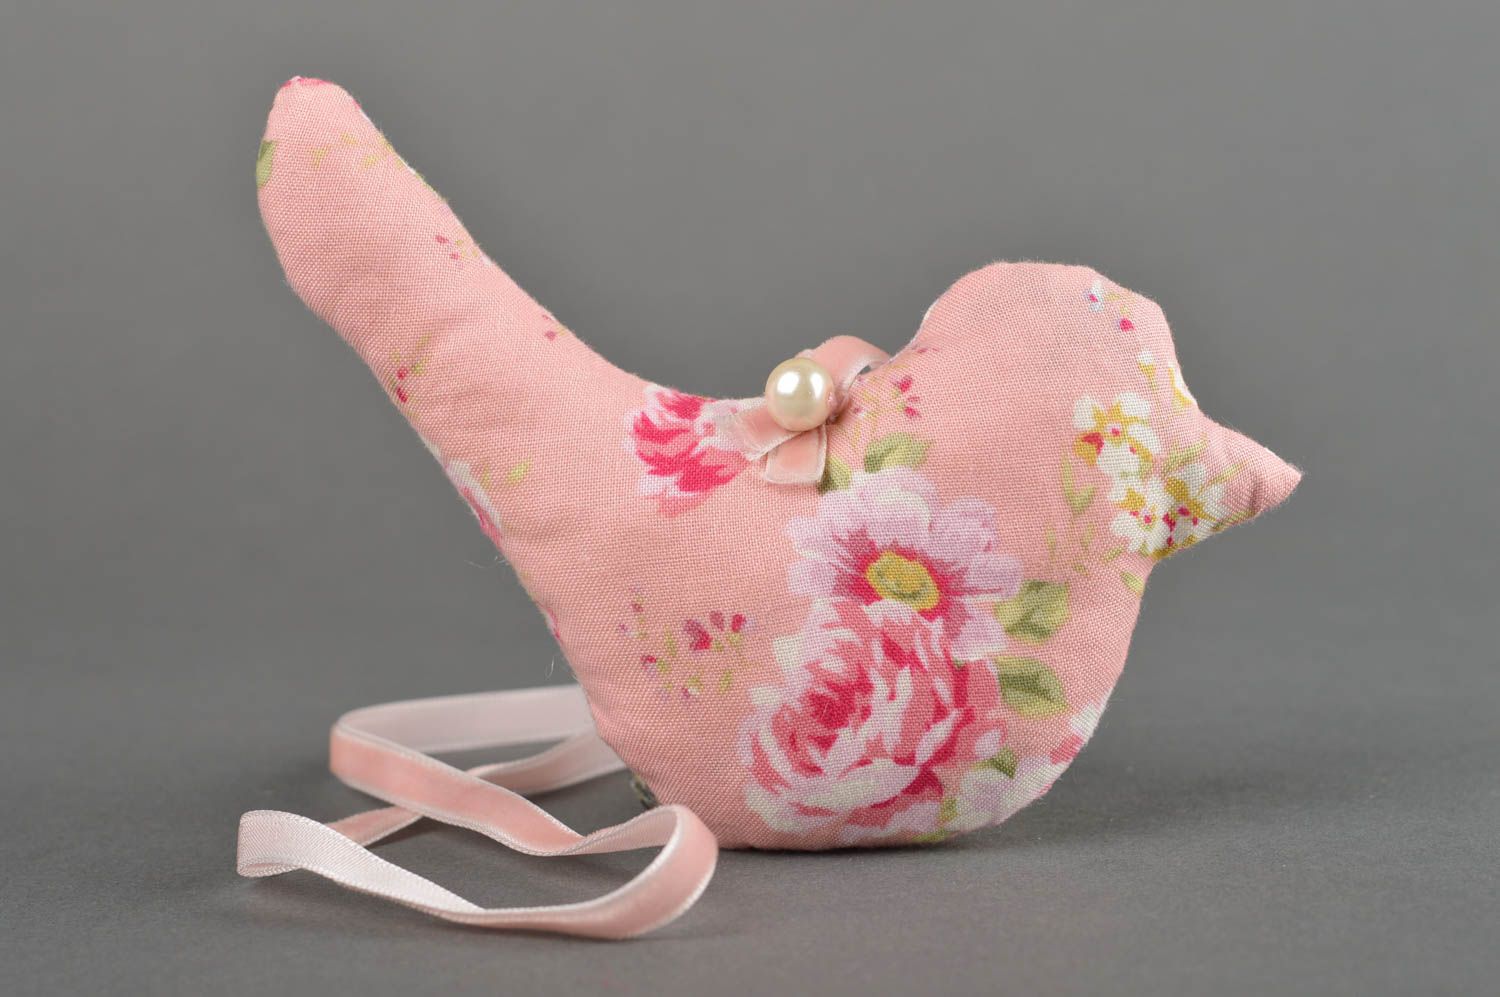 Игрушка ручной работы игрушка птица интересный подарок для дома из ткани фото 2